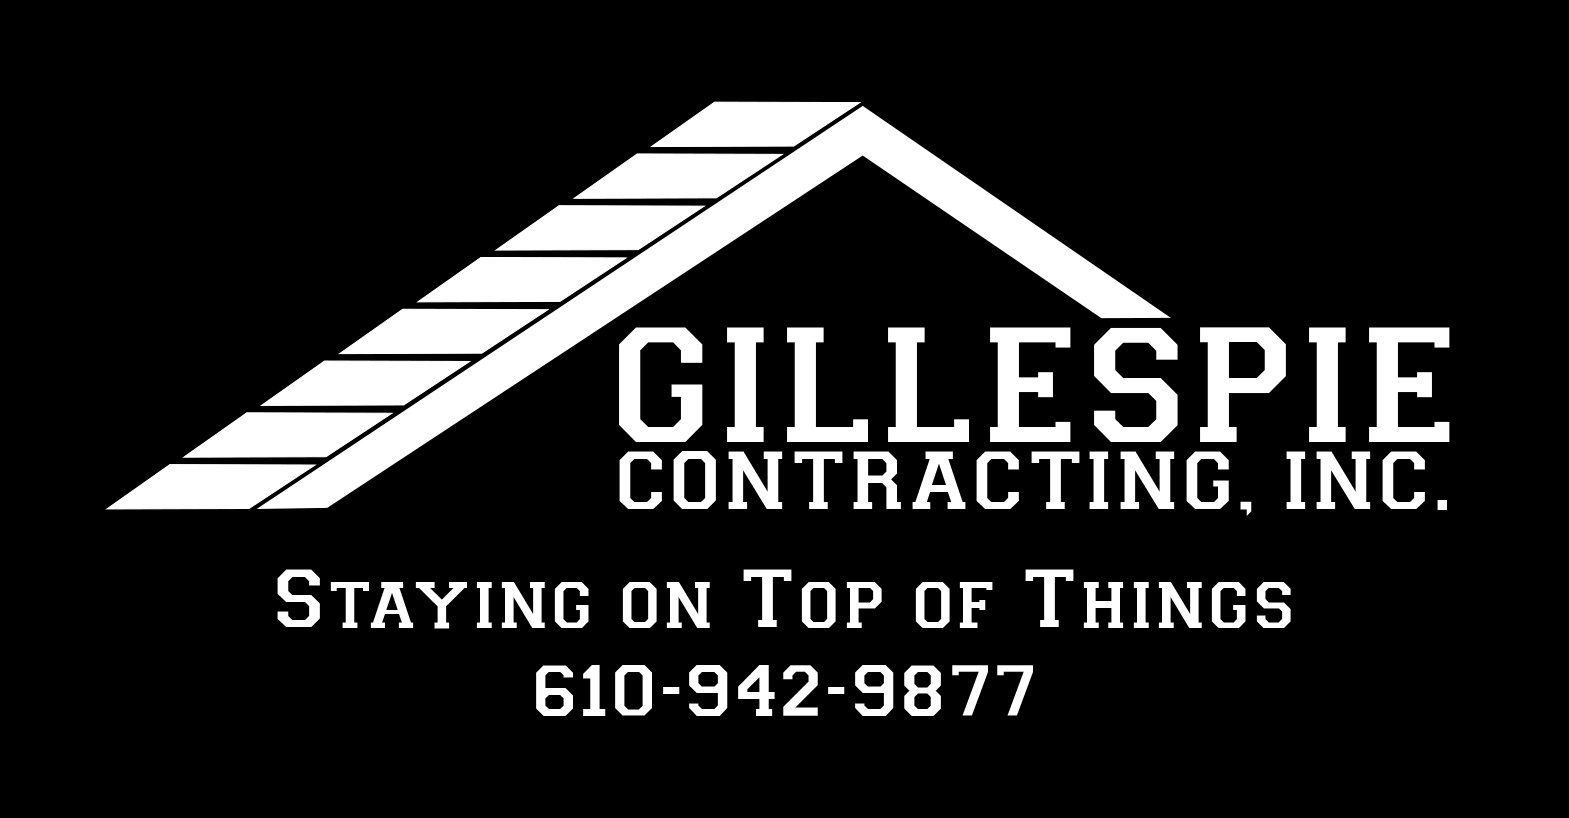 Gillespie Contracting, Inc.